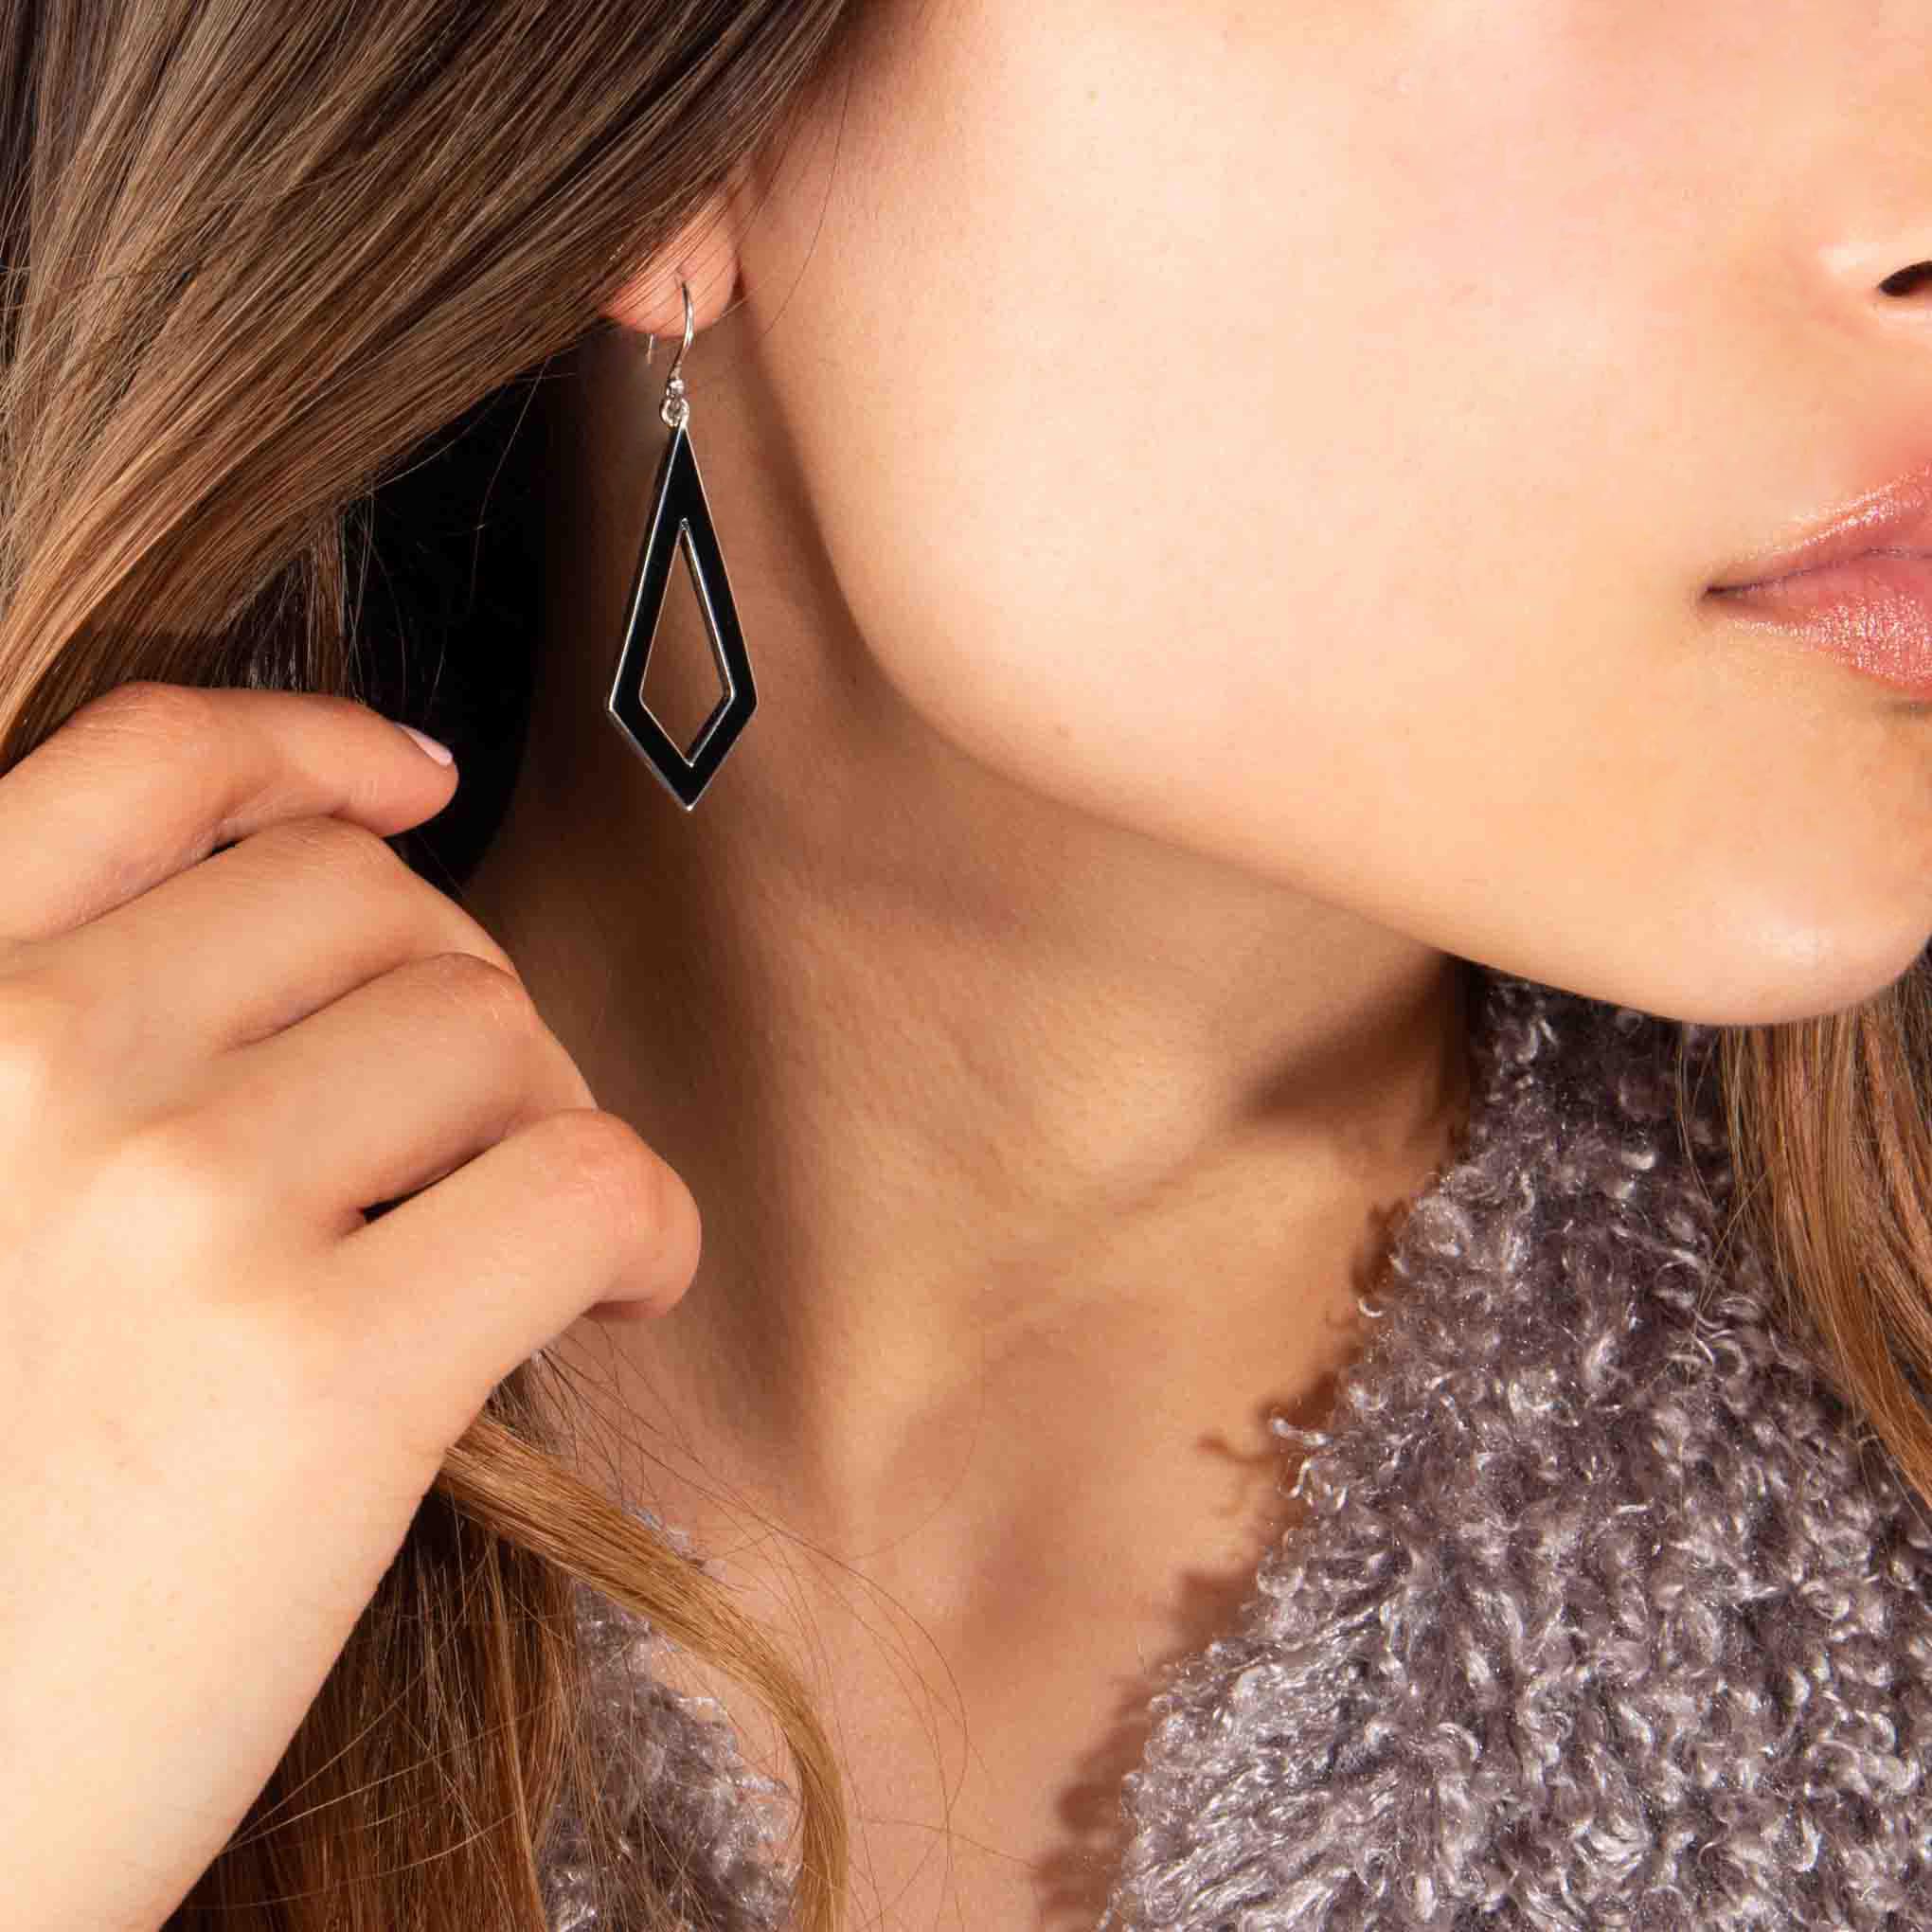 Enameled silver prism earrings